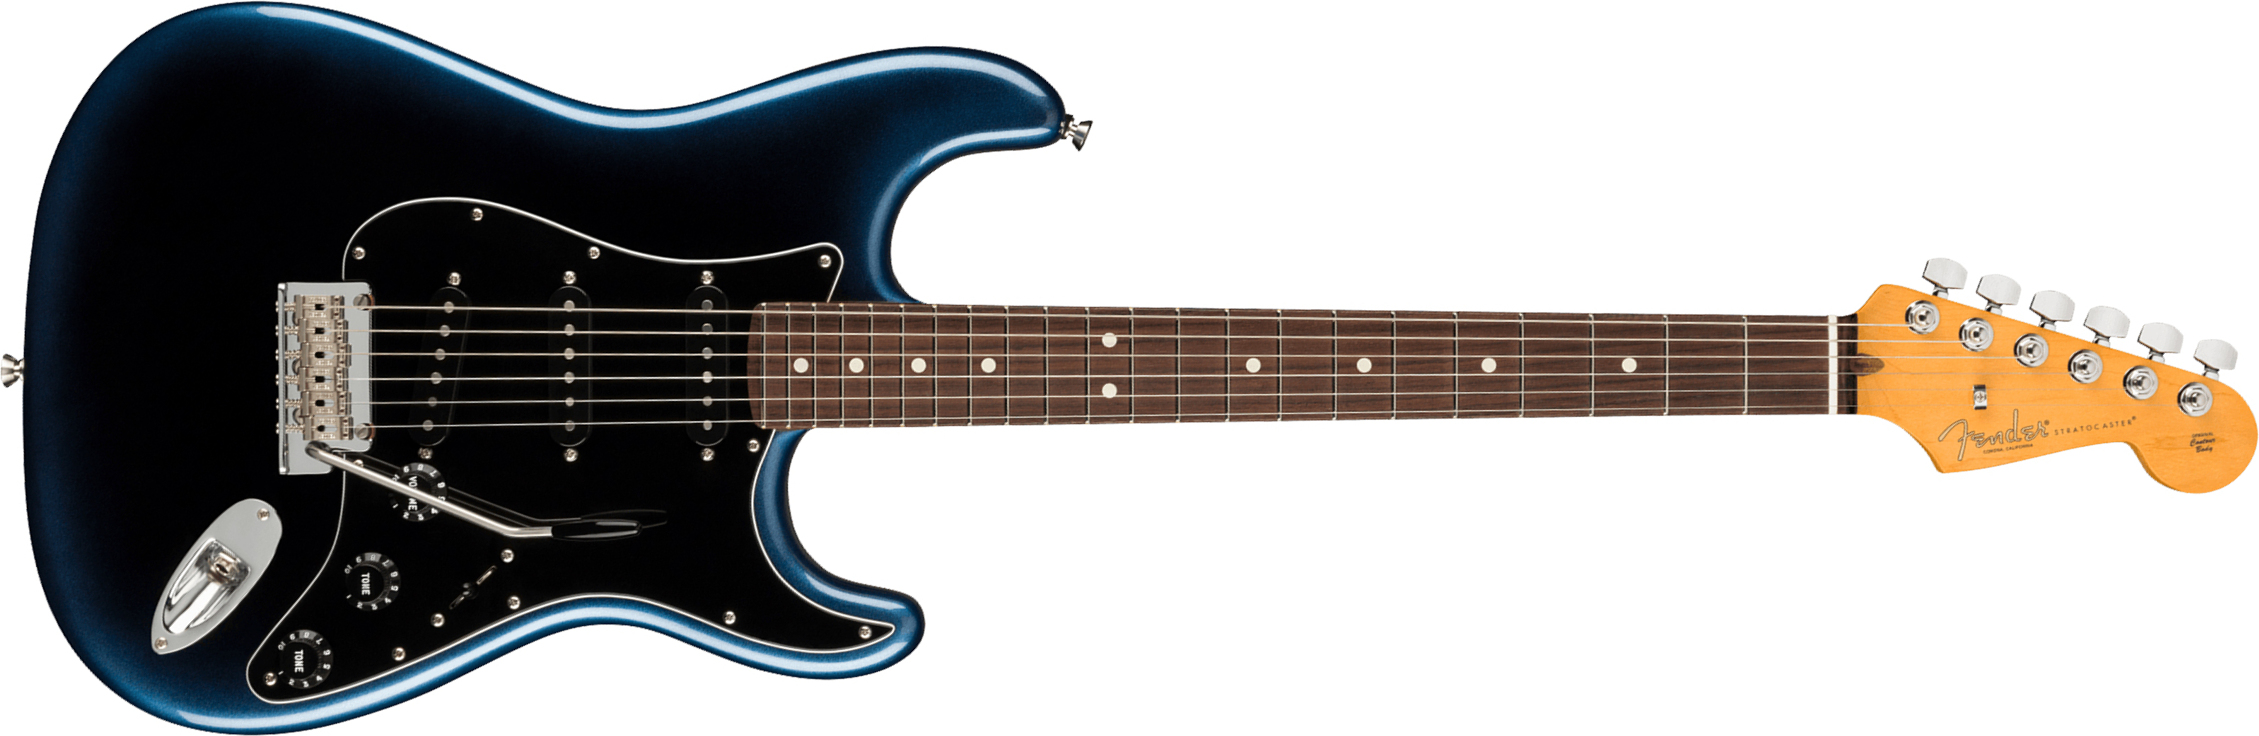 Fender Strat American Professional Ii Usa Rw - Dark Night - Elektrische gitaar in Str-vorm - Main picture